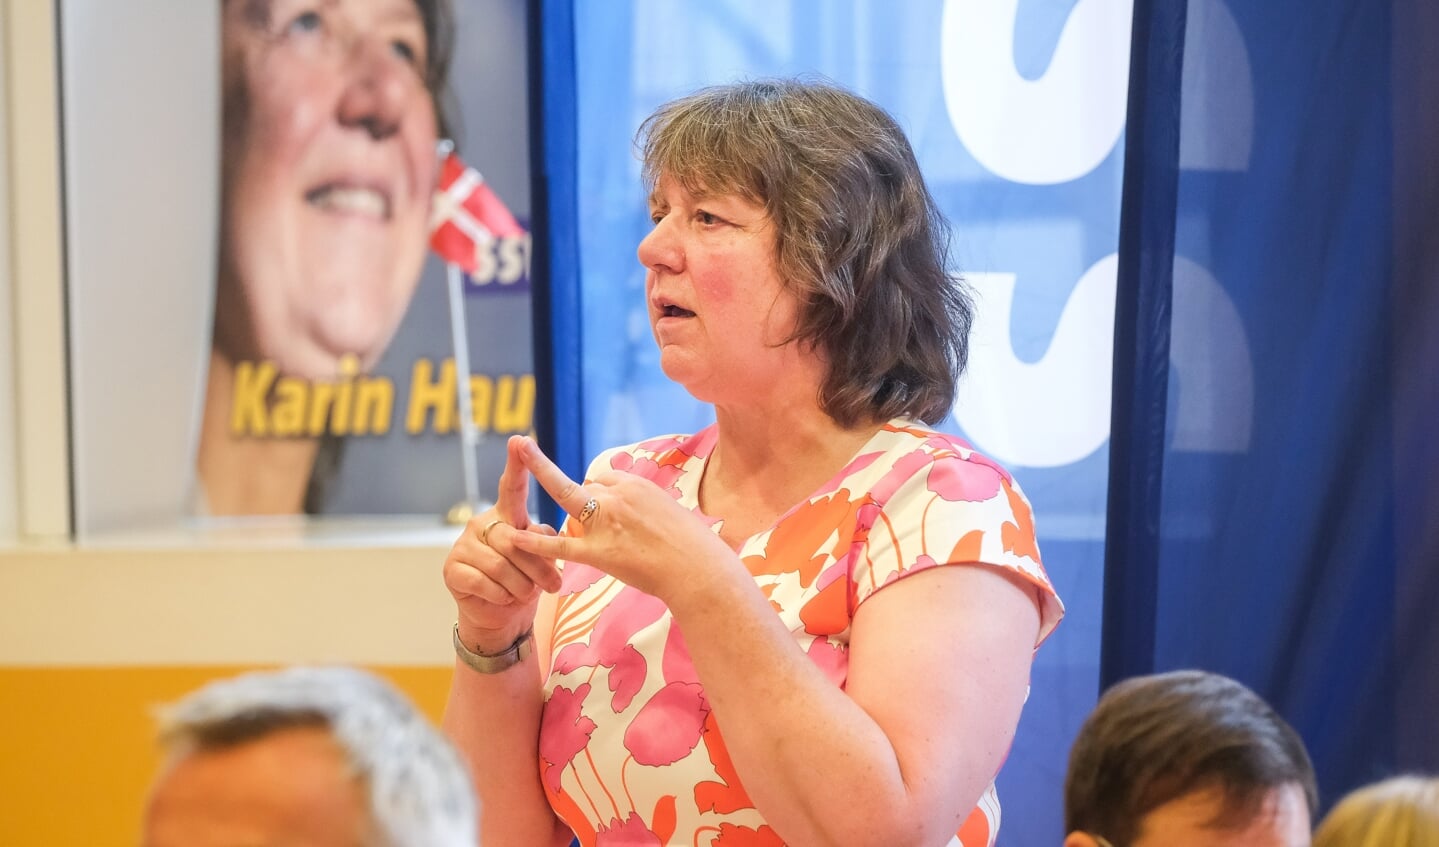 - Ressourcerne er knappe, og derfor vil jeg bruge dem mere målrettet, siger Karin Haug blandt andet om sine planer, hvis hun vinder overborgmestervalget den 18. september. 